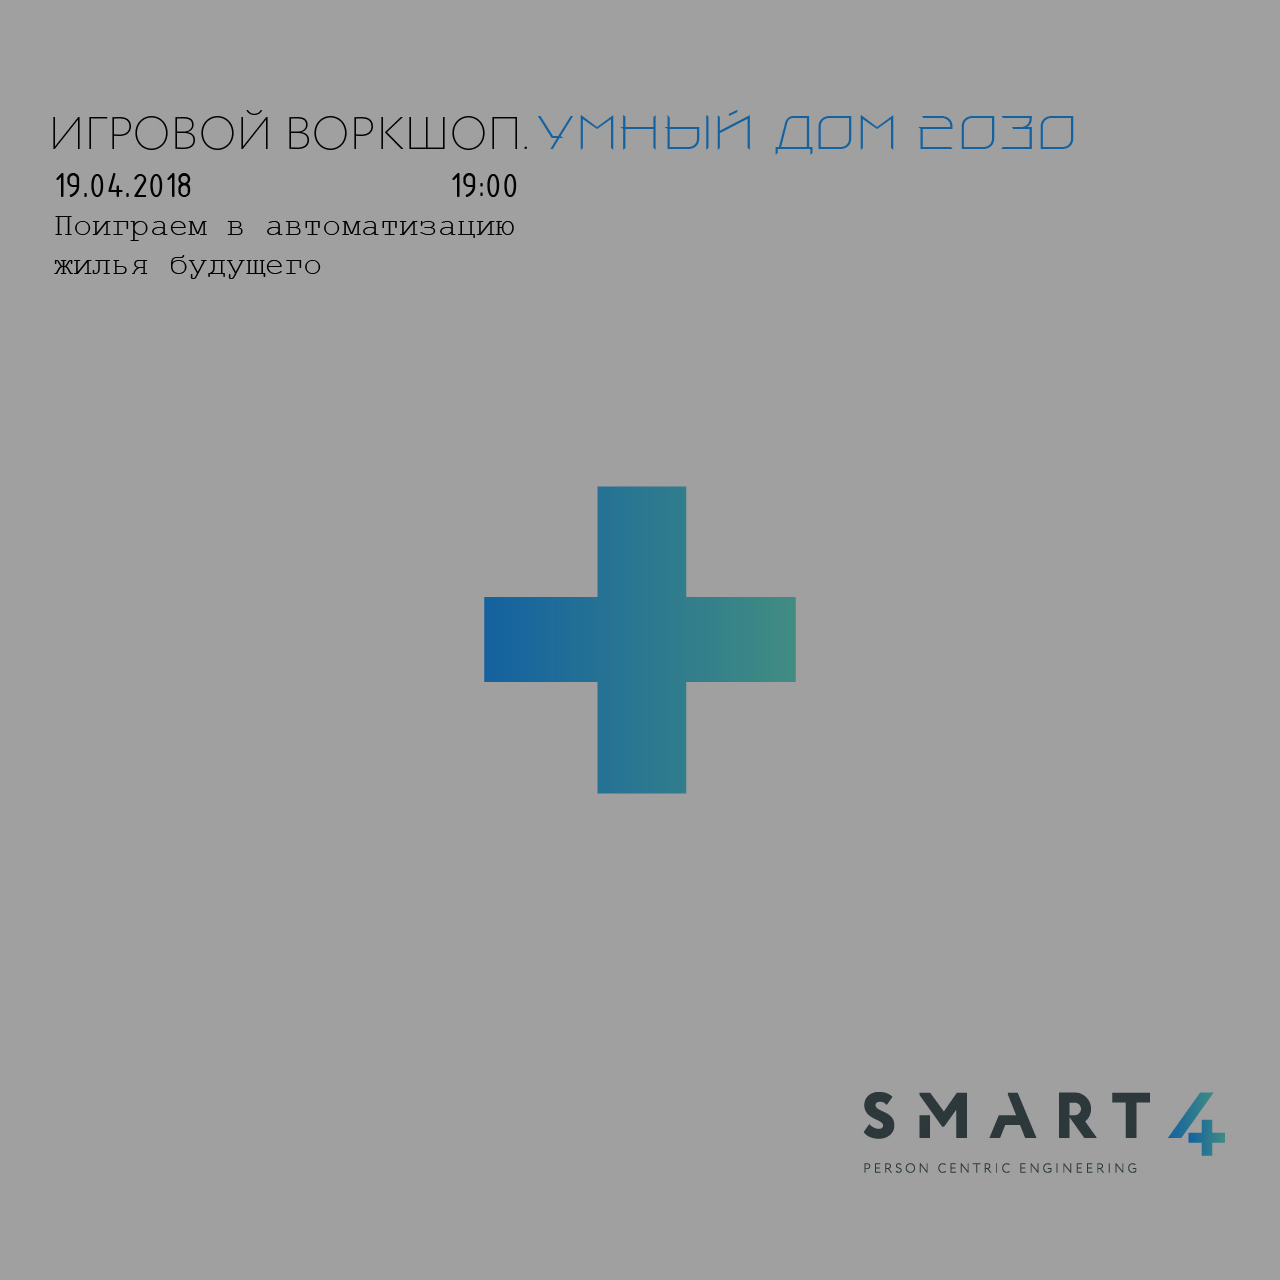  ВОРКШОП - УМНЫЙ ДОМ 2030